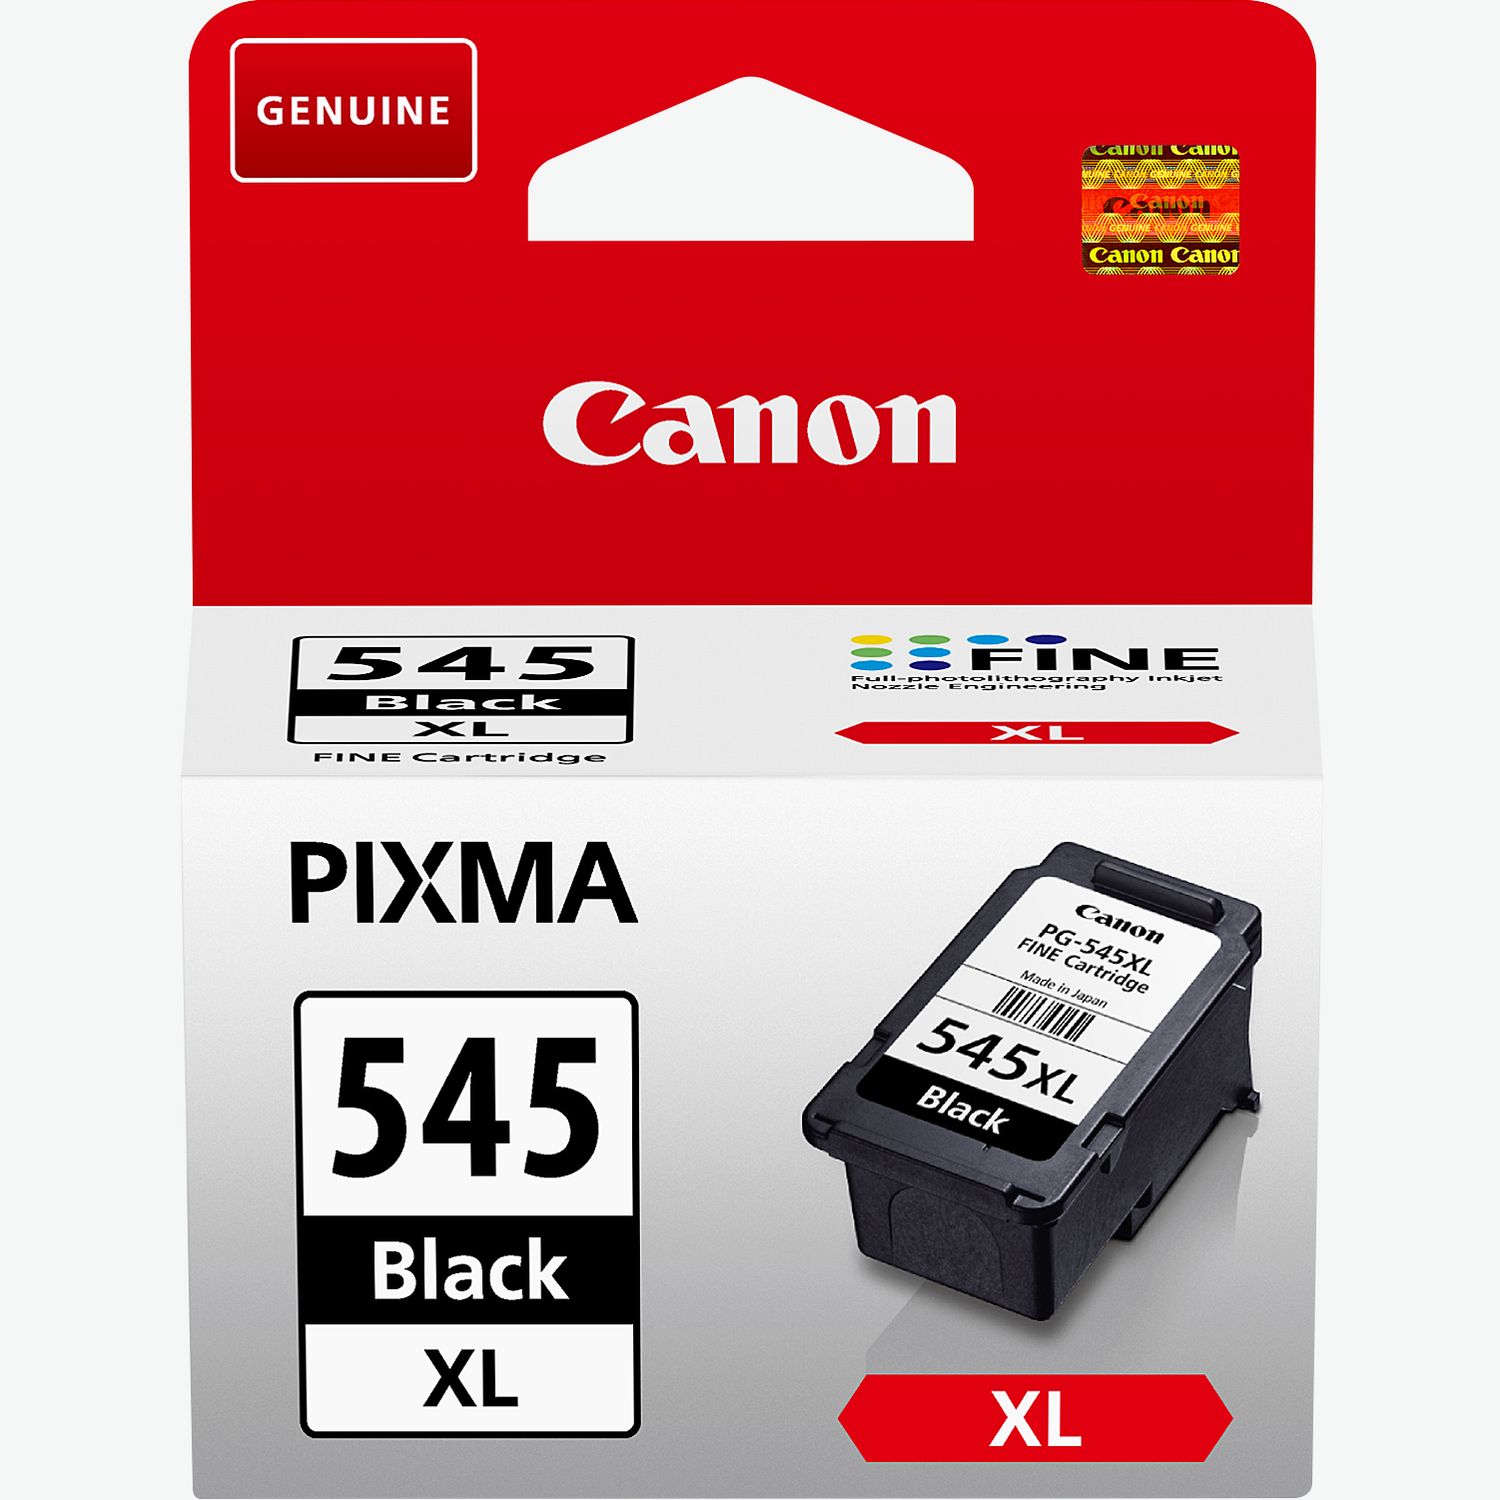 Cartouche d'encre noire pour imprimante Canon MG2550 Pixma, PG545